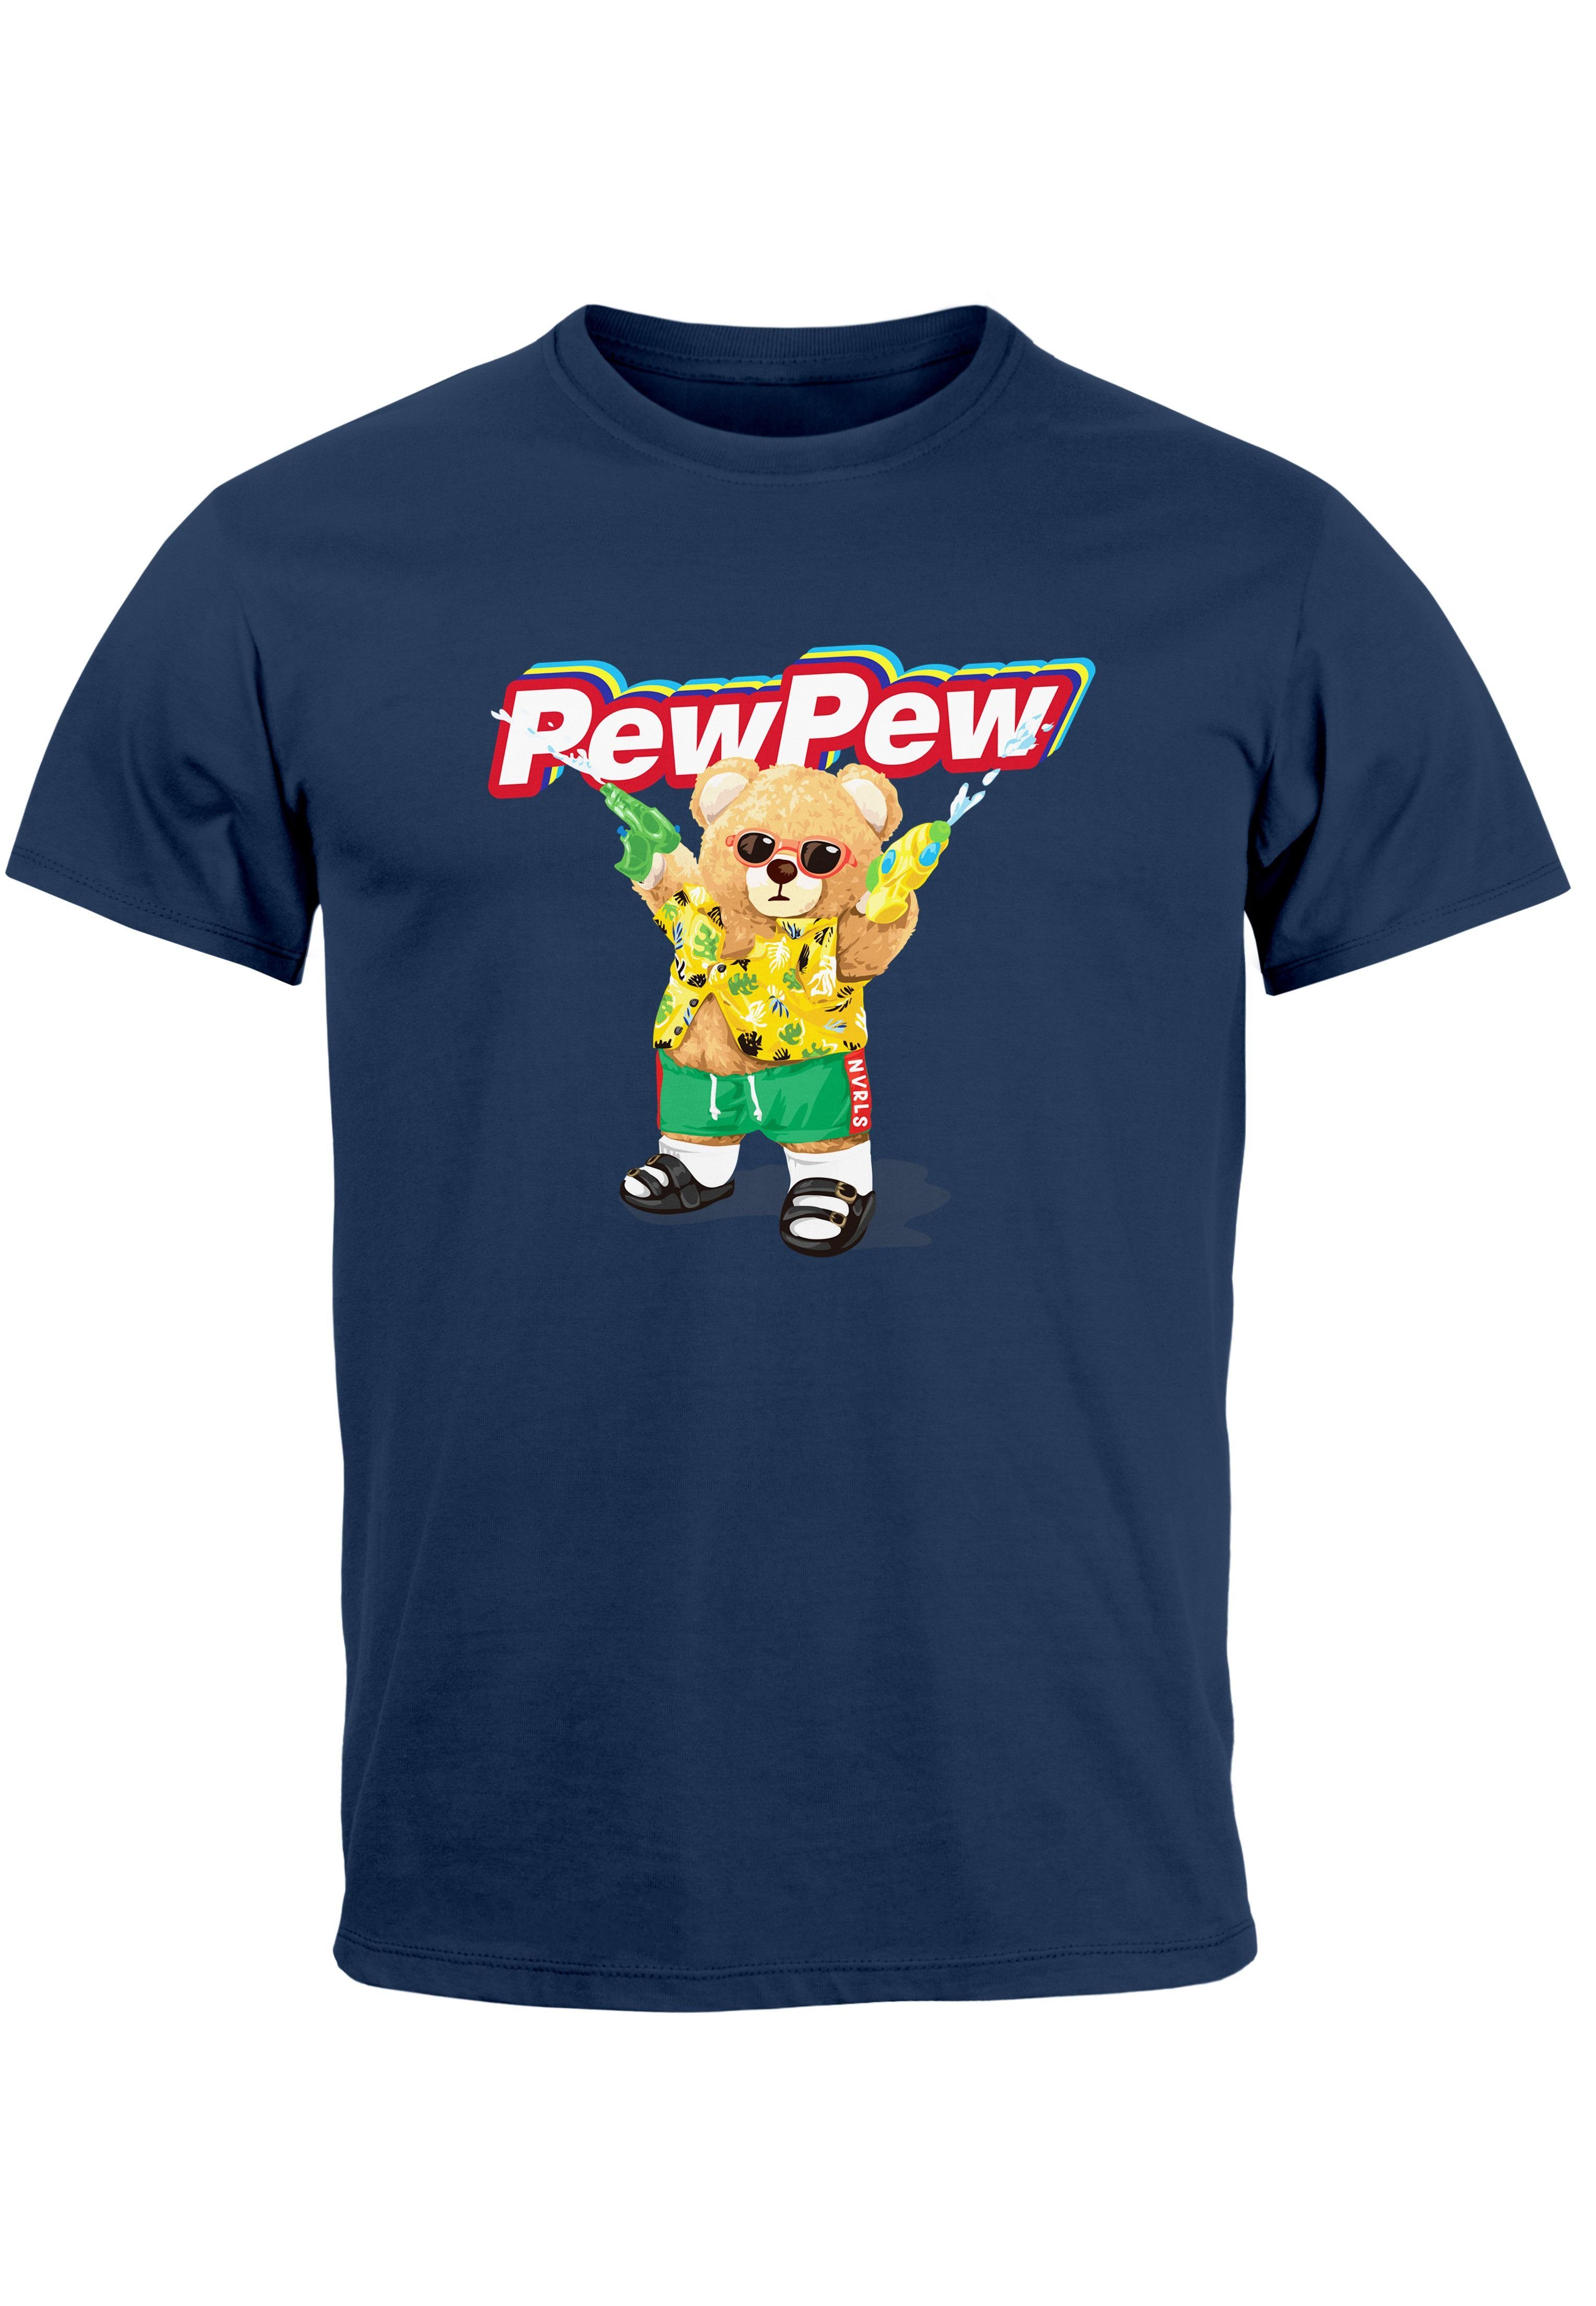 Neverless Print-Shirt Herren T-Shirt Pew Pew Bär Sommer Printshirt Aufdruck Motiv lustig Fas mit Print navy | T-Shirts